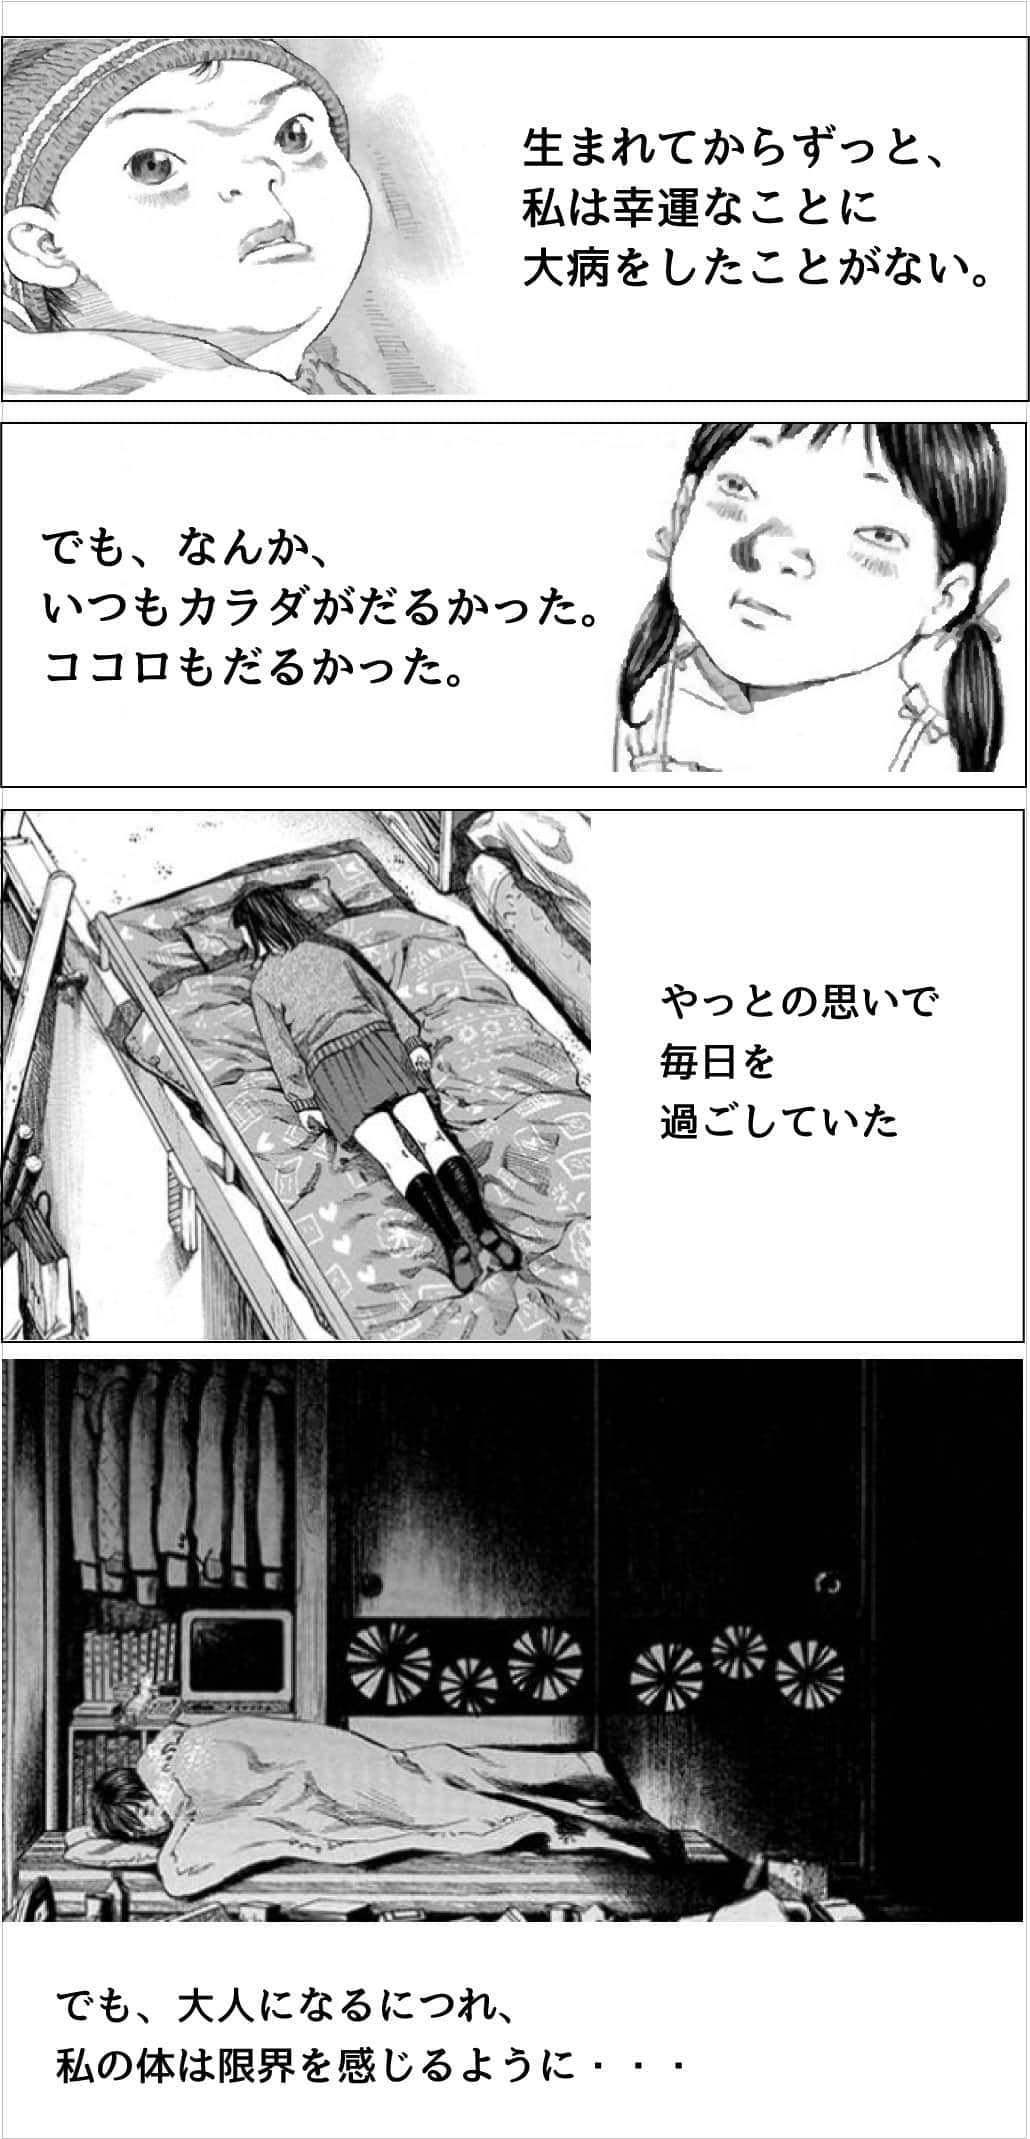 manga2